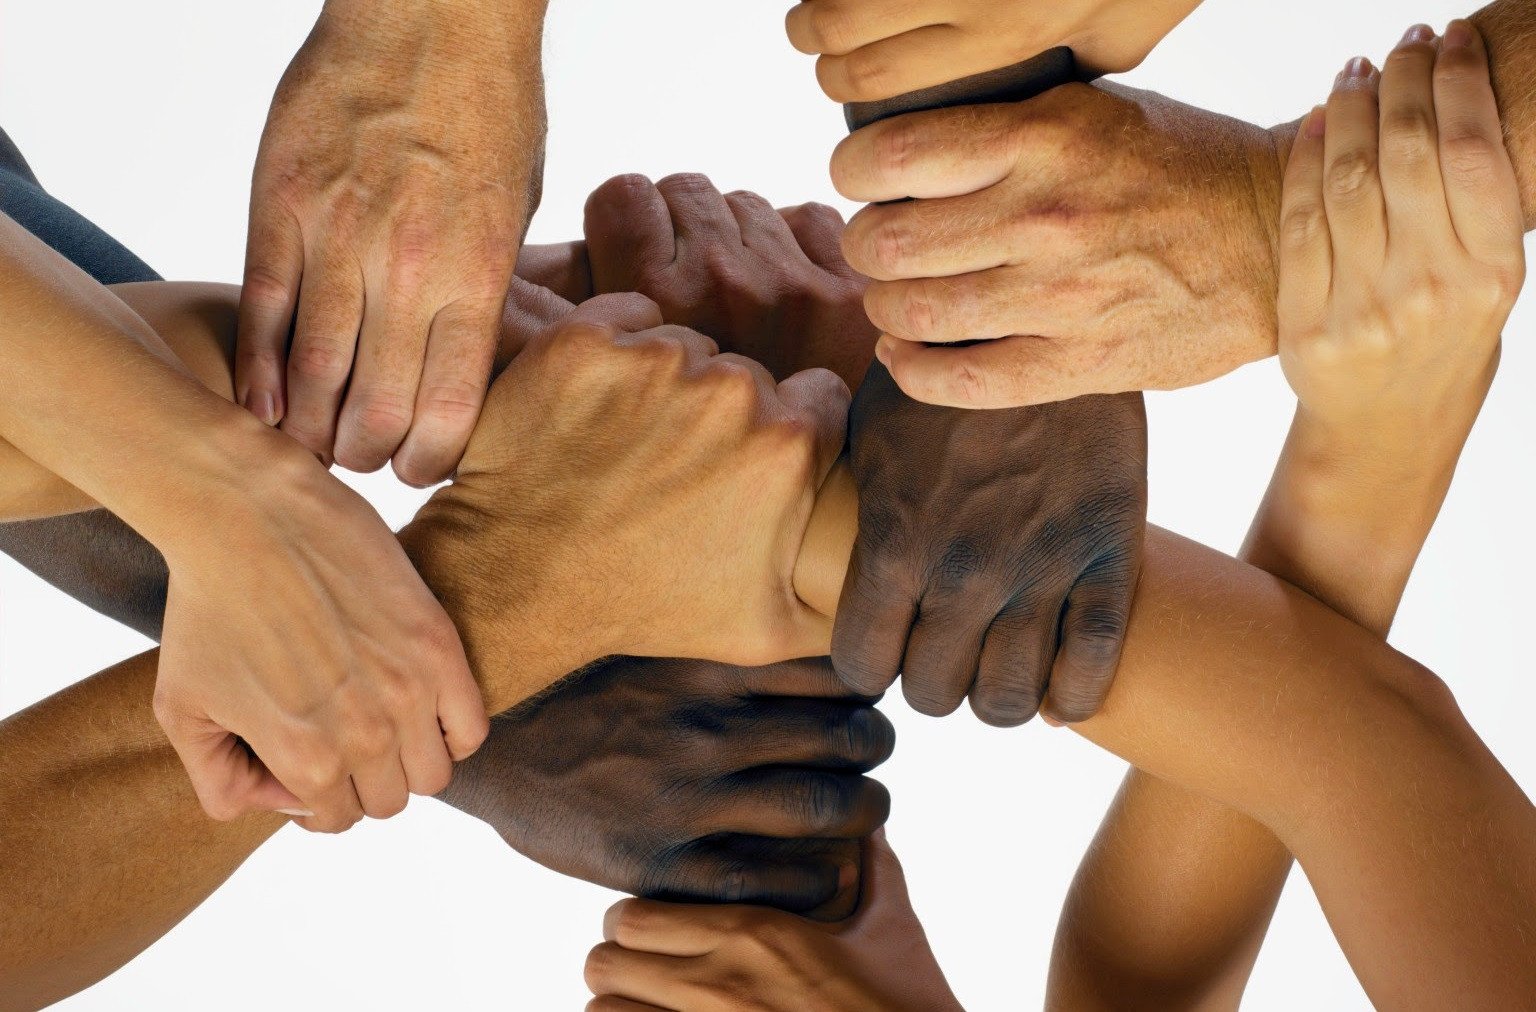 Цвет неважен. Единство людей. Равенство между людьми. Много рук. Руки людей разных рас.